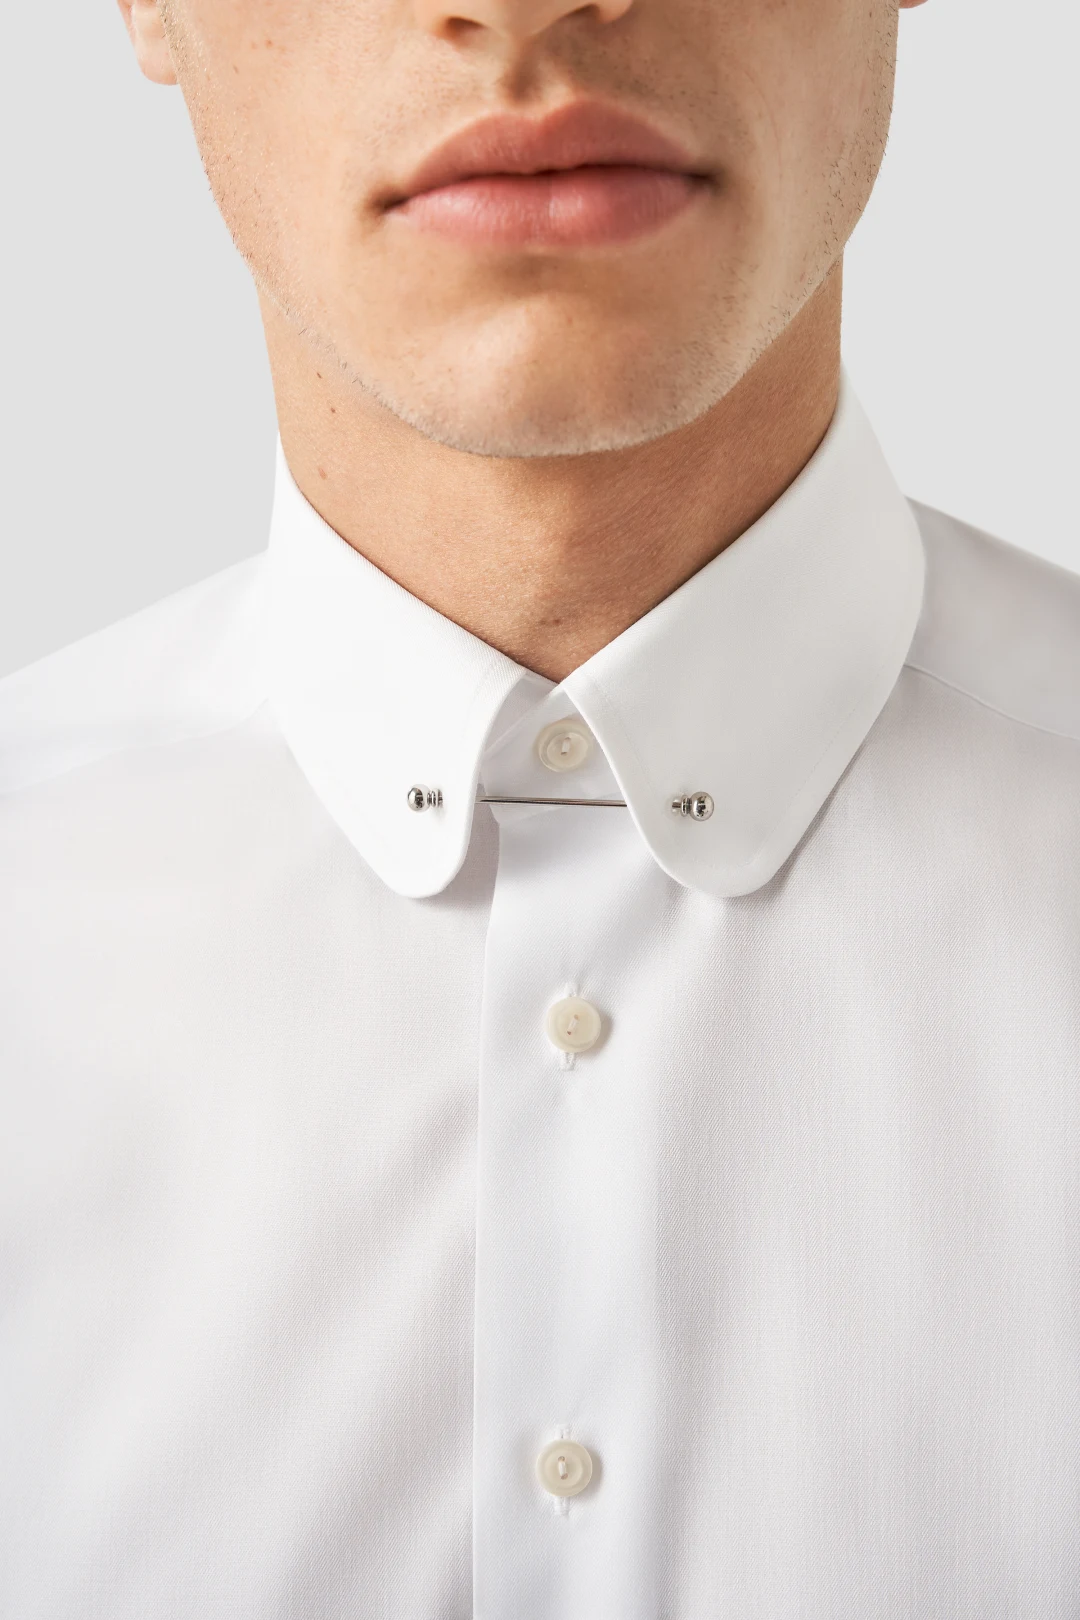 Collars - Eton shirts